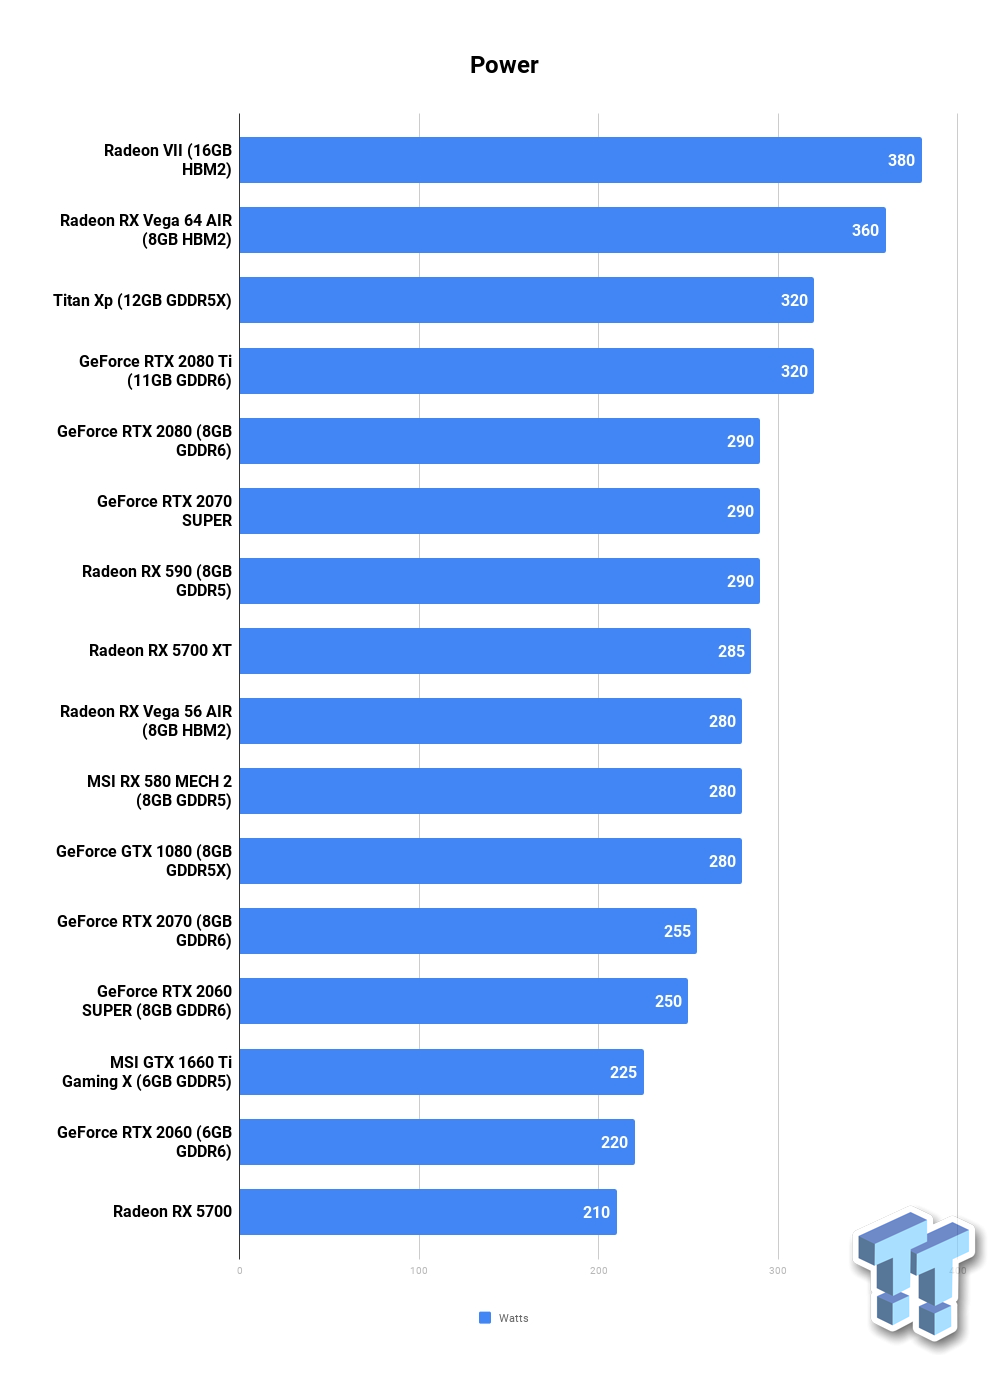 Pobór mocy. Wyniki w watach. Mniej = lepiej. Źródło tweaktown.com - Recenzje kart AMD Radeon RX 5700 i RX 5700 XT - mogło być gorzej - wiadomość - 2019-07-08